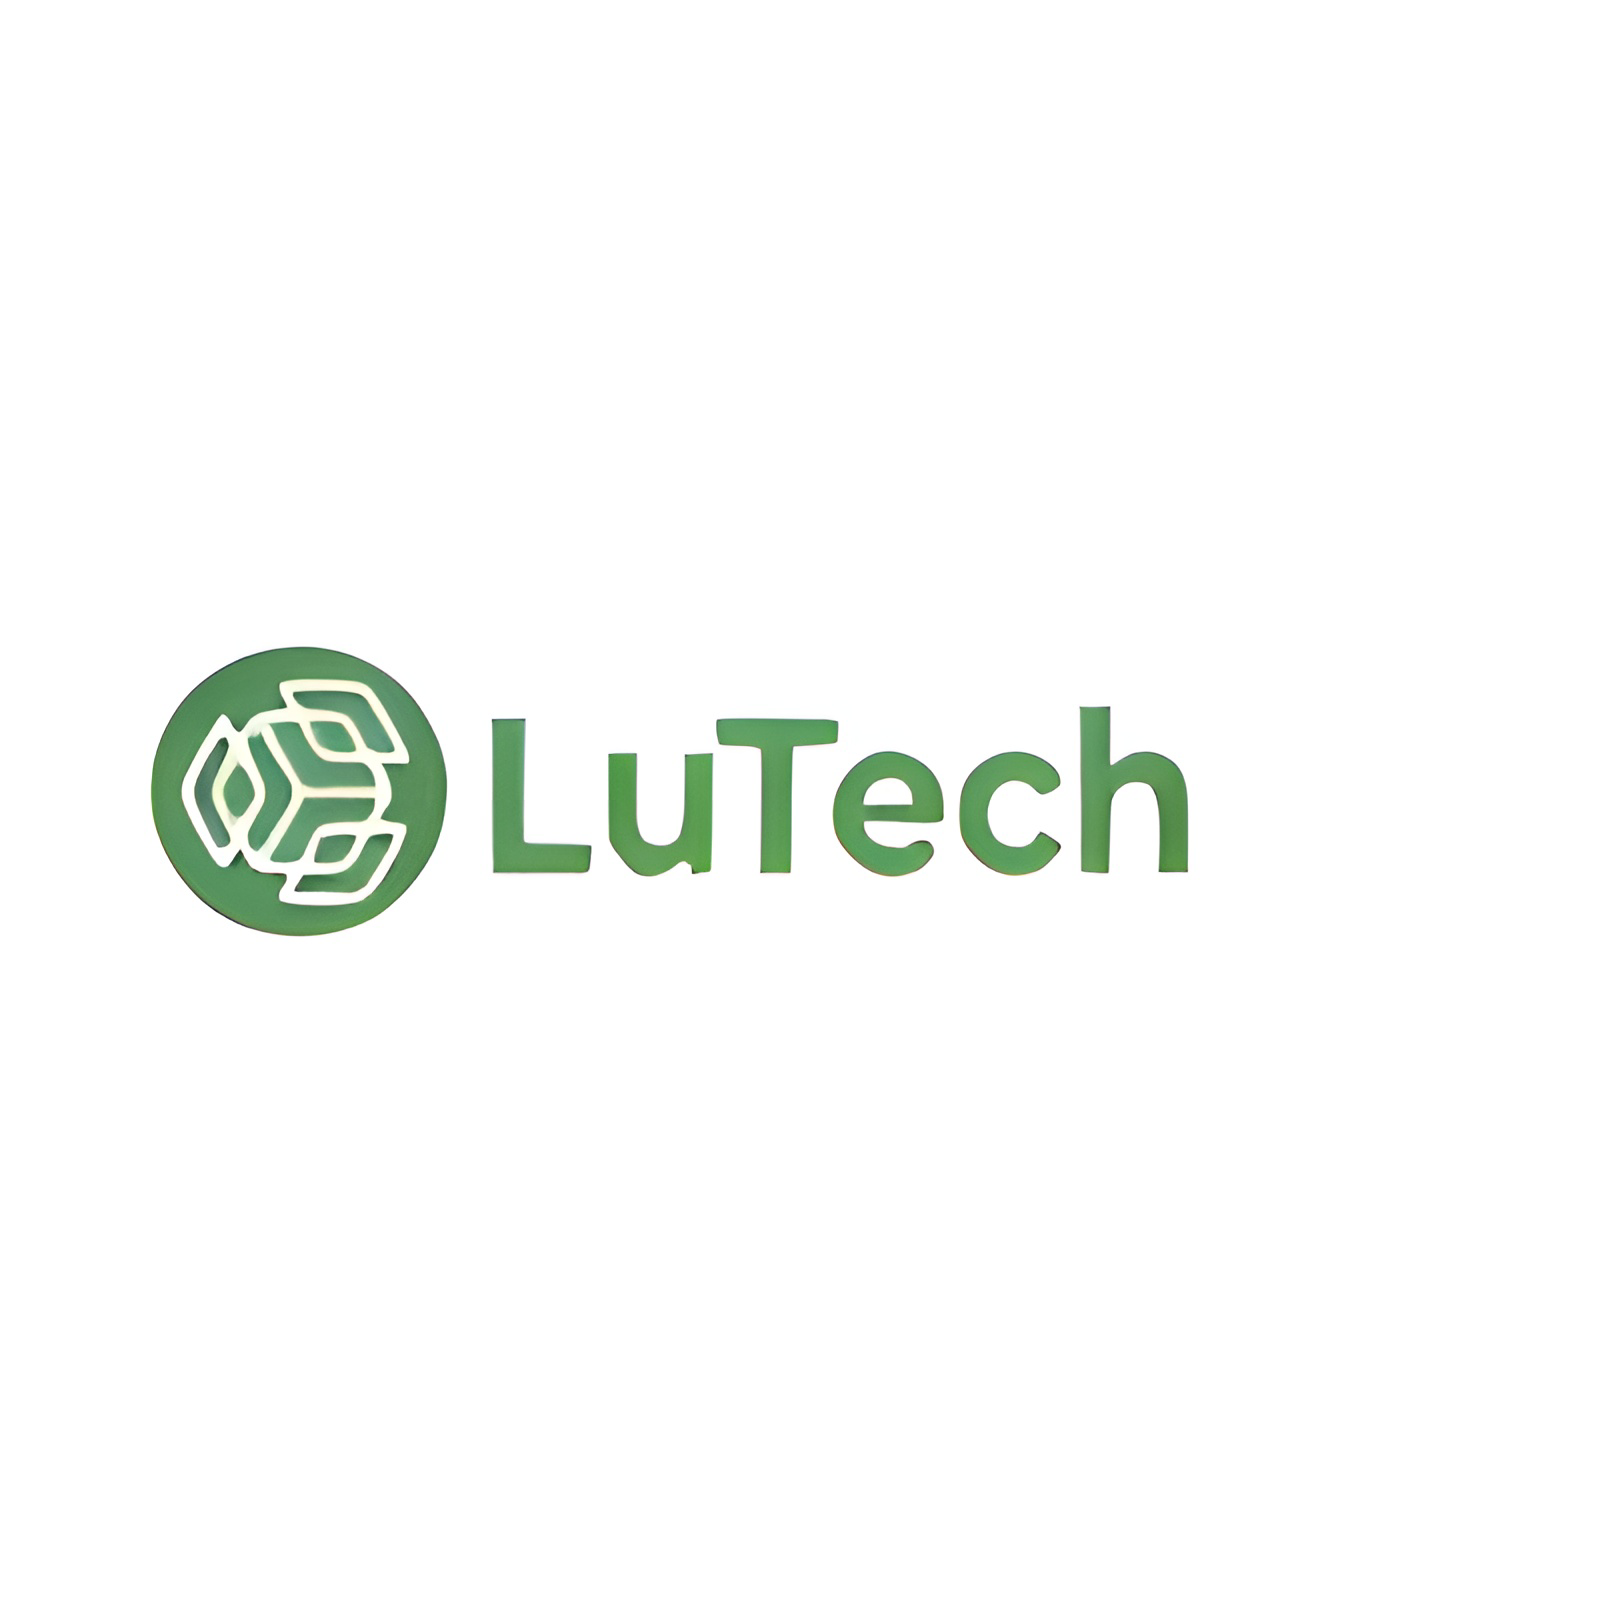 LuTech